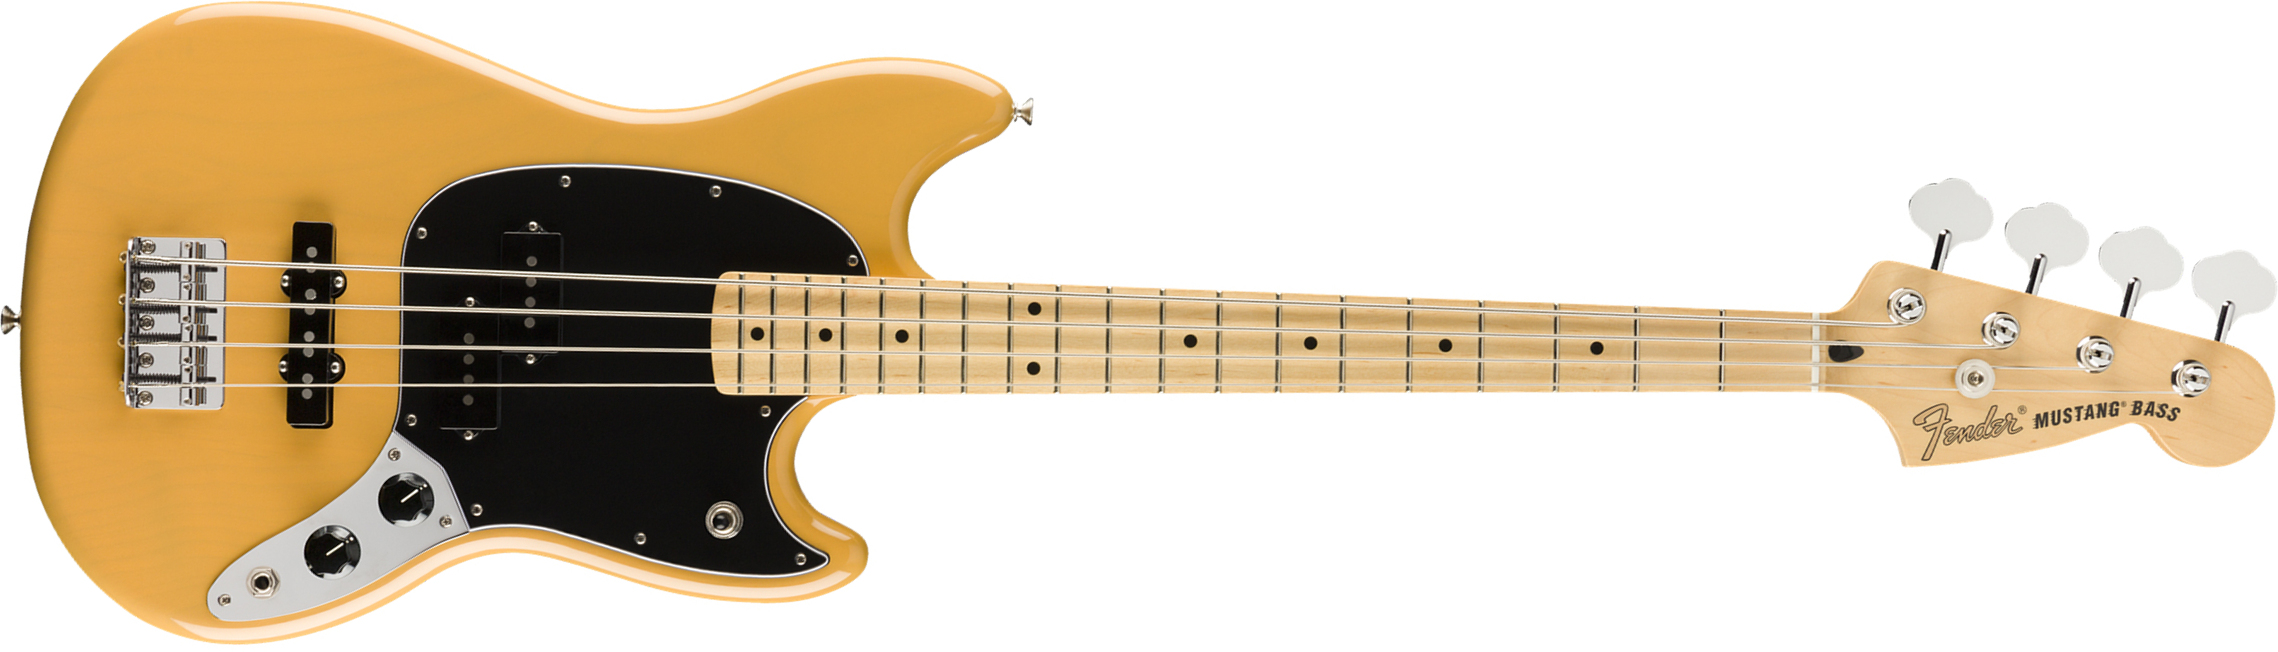 Fender Mustang Bass Pj Player Ltd Mex Mn - Butterscotch Blonde - Electric bass for kids - Main picture